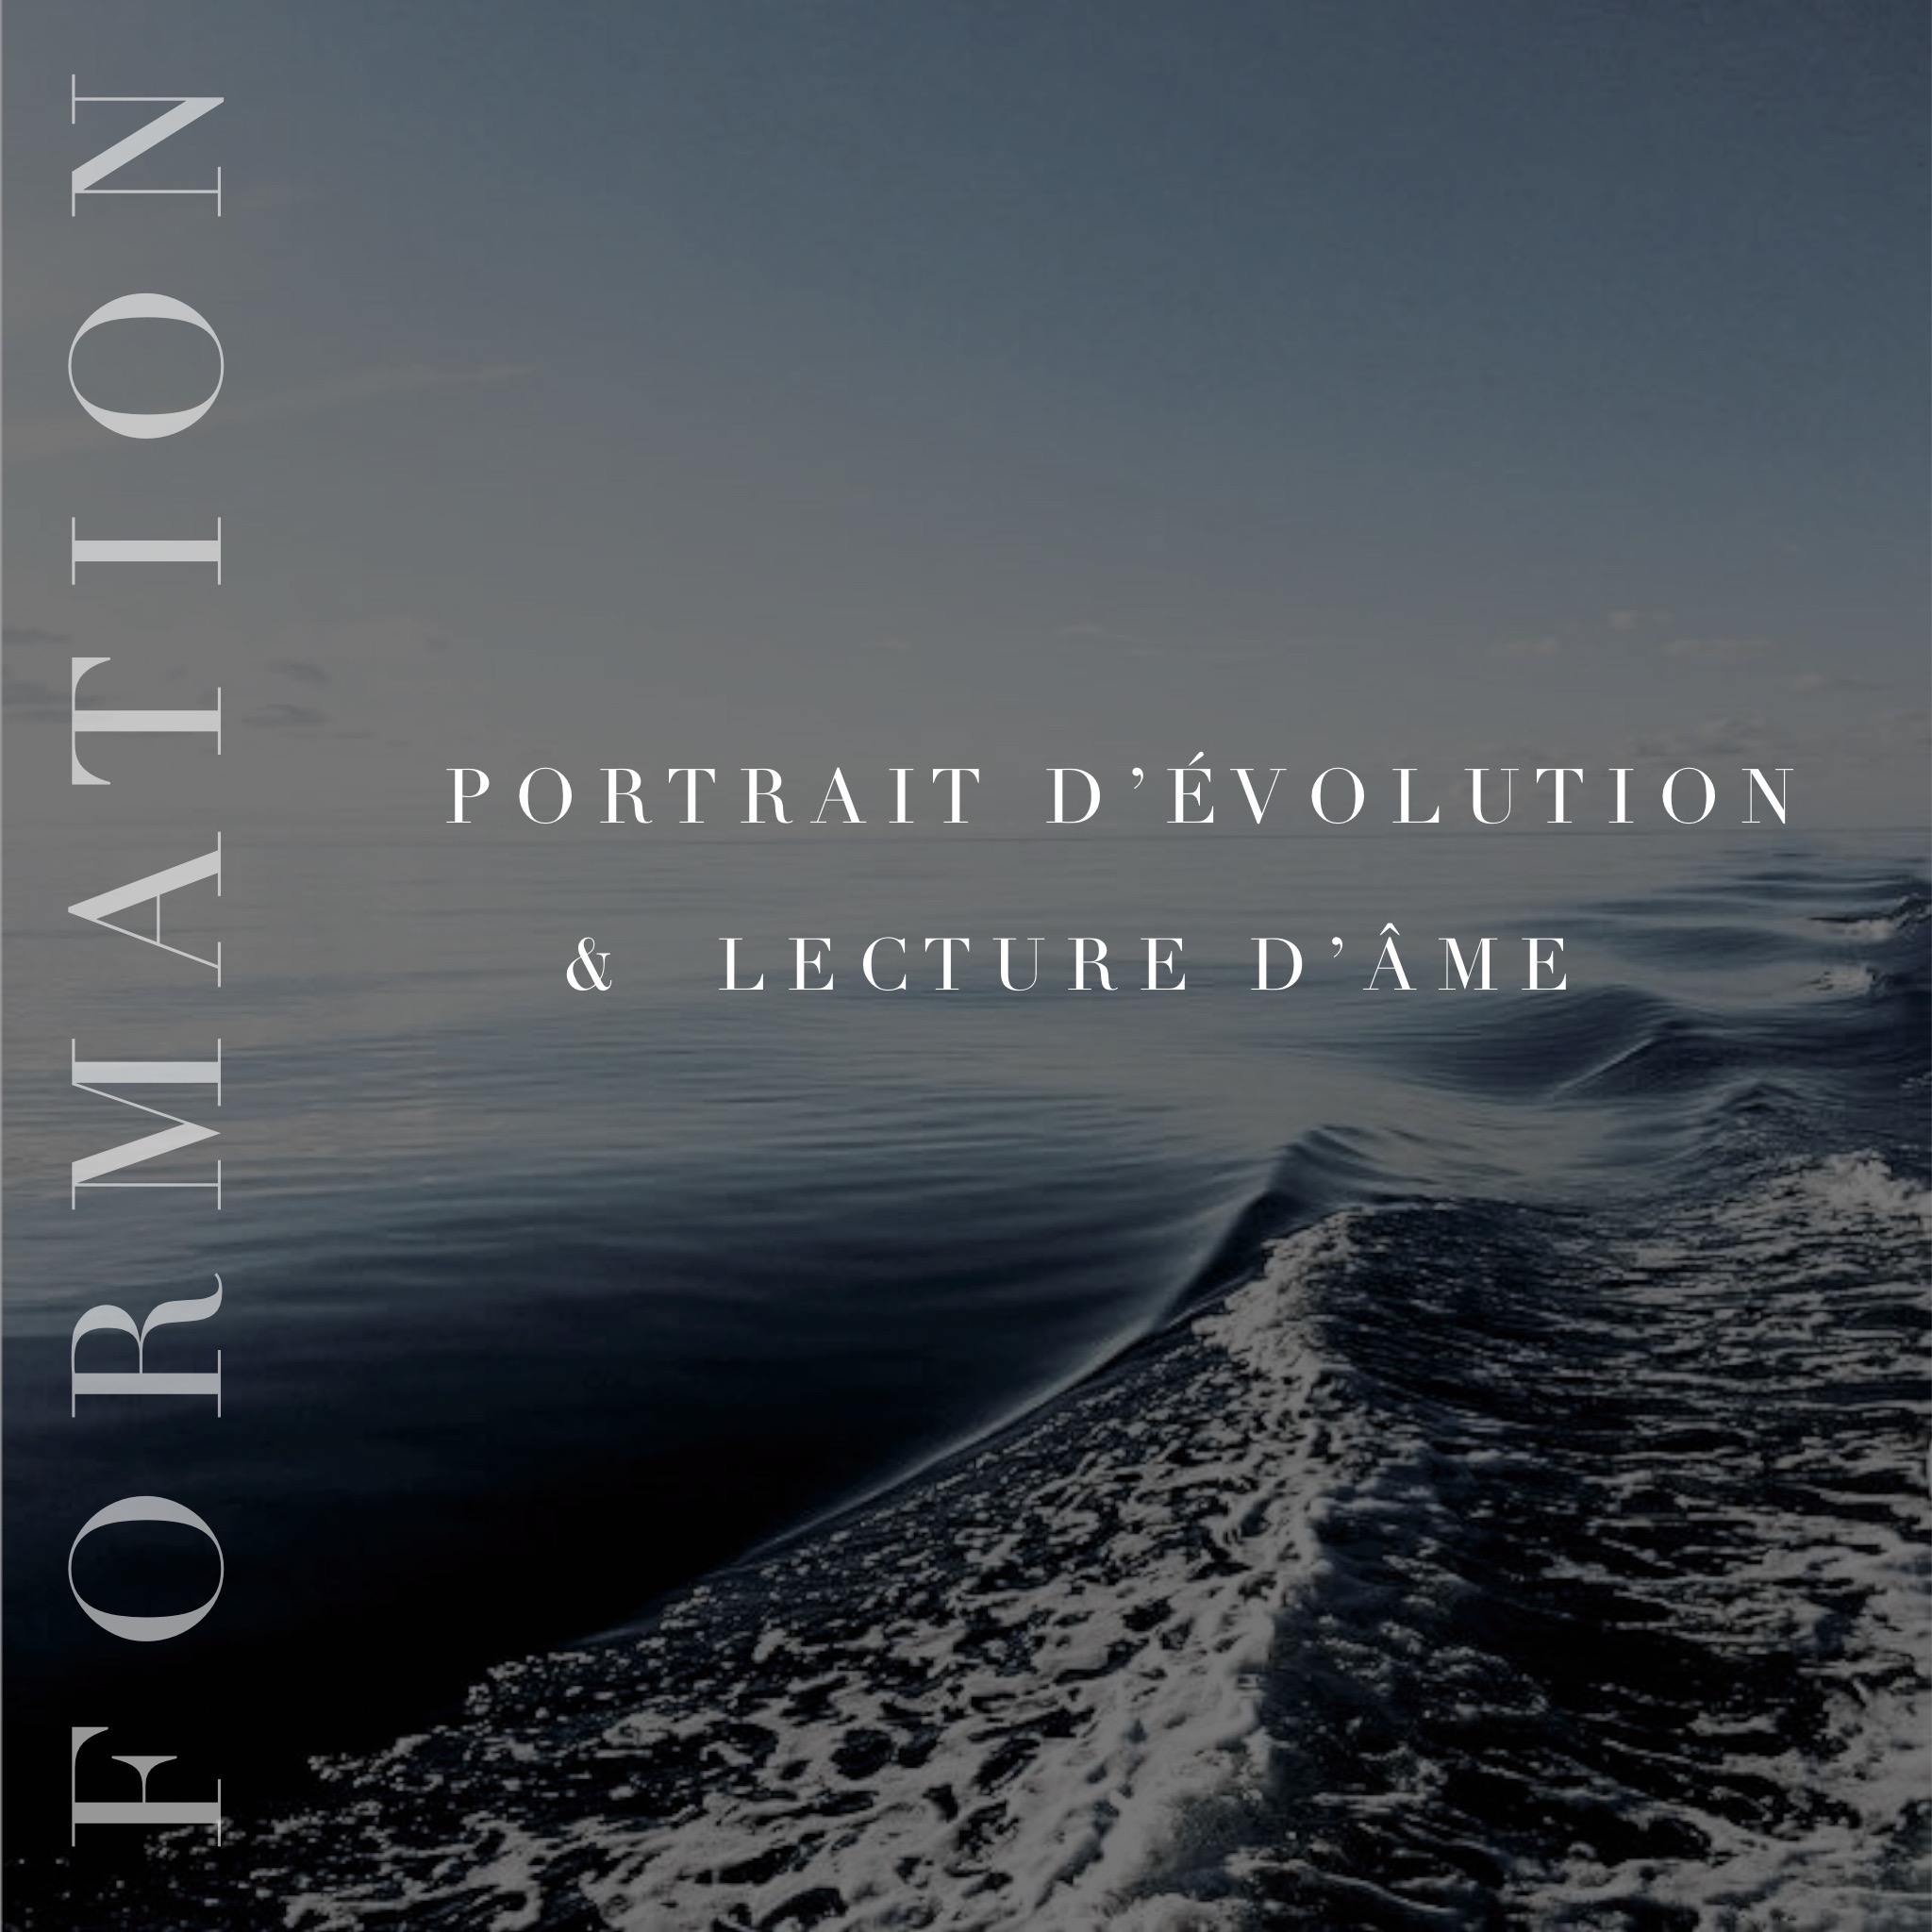 FORMATION “PORTRAIT D’ÉVOLUTION & LECTURE D’ÂME”